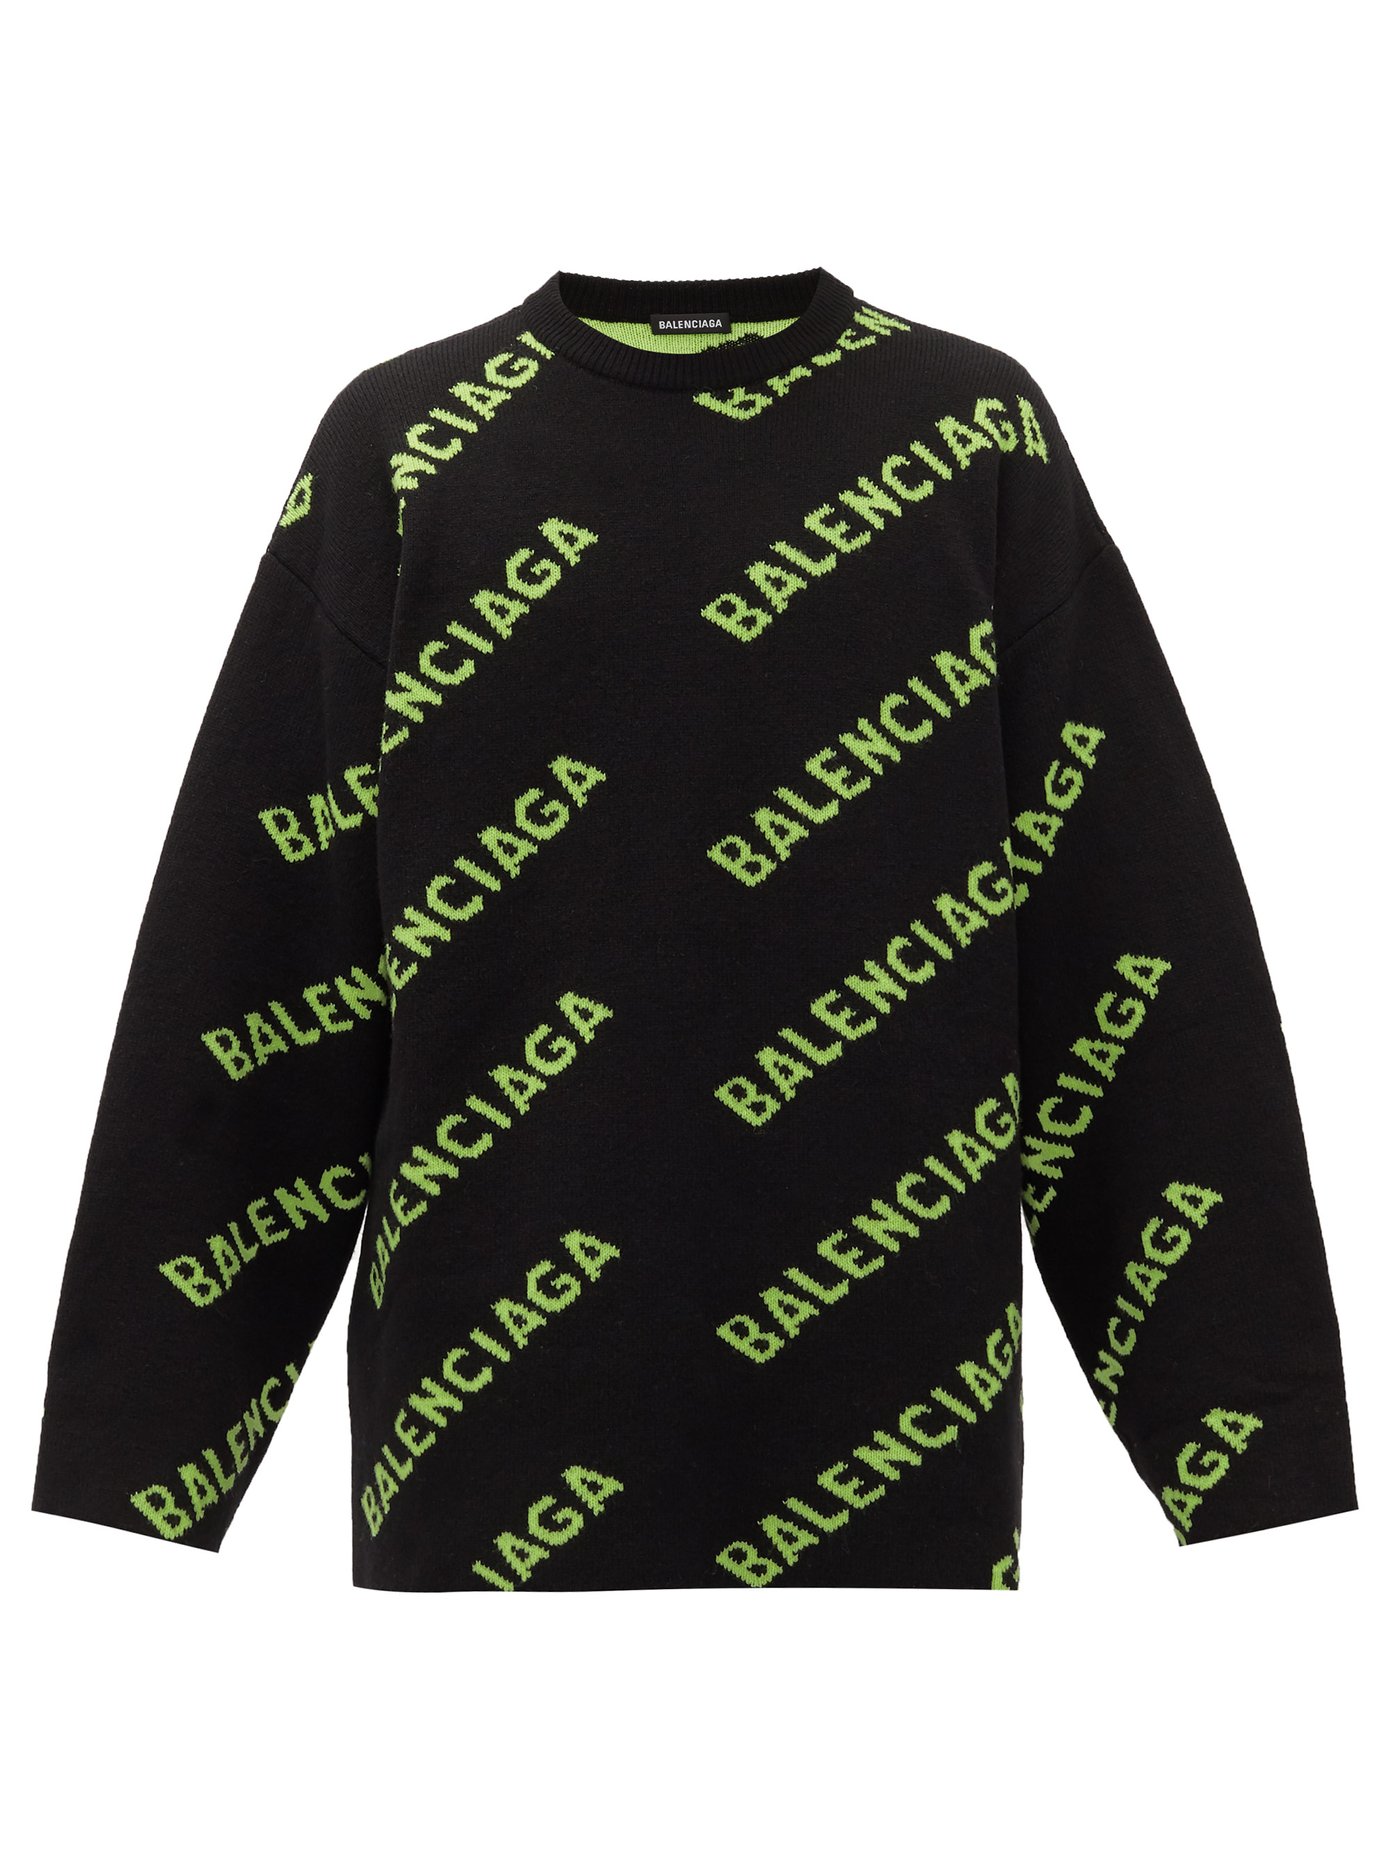 balenciaga logo sweater green